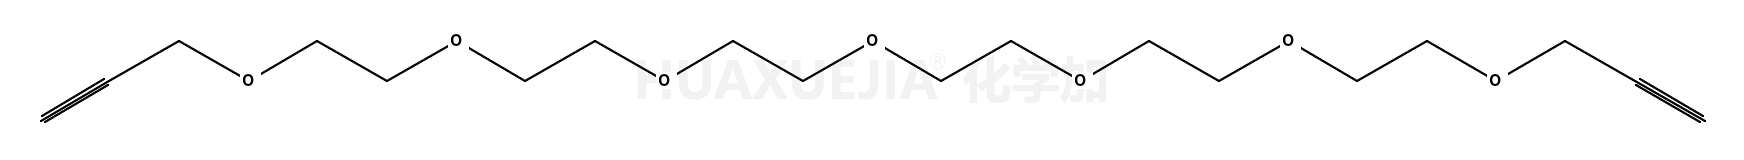 丙炔基-六聚乙二醇-丙炔基